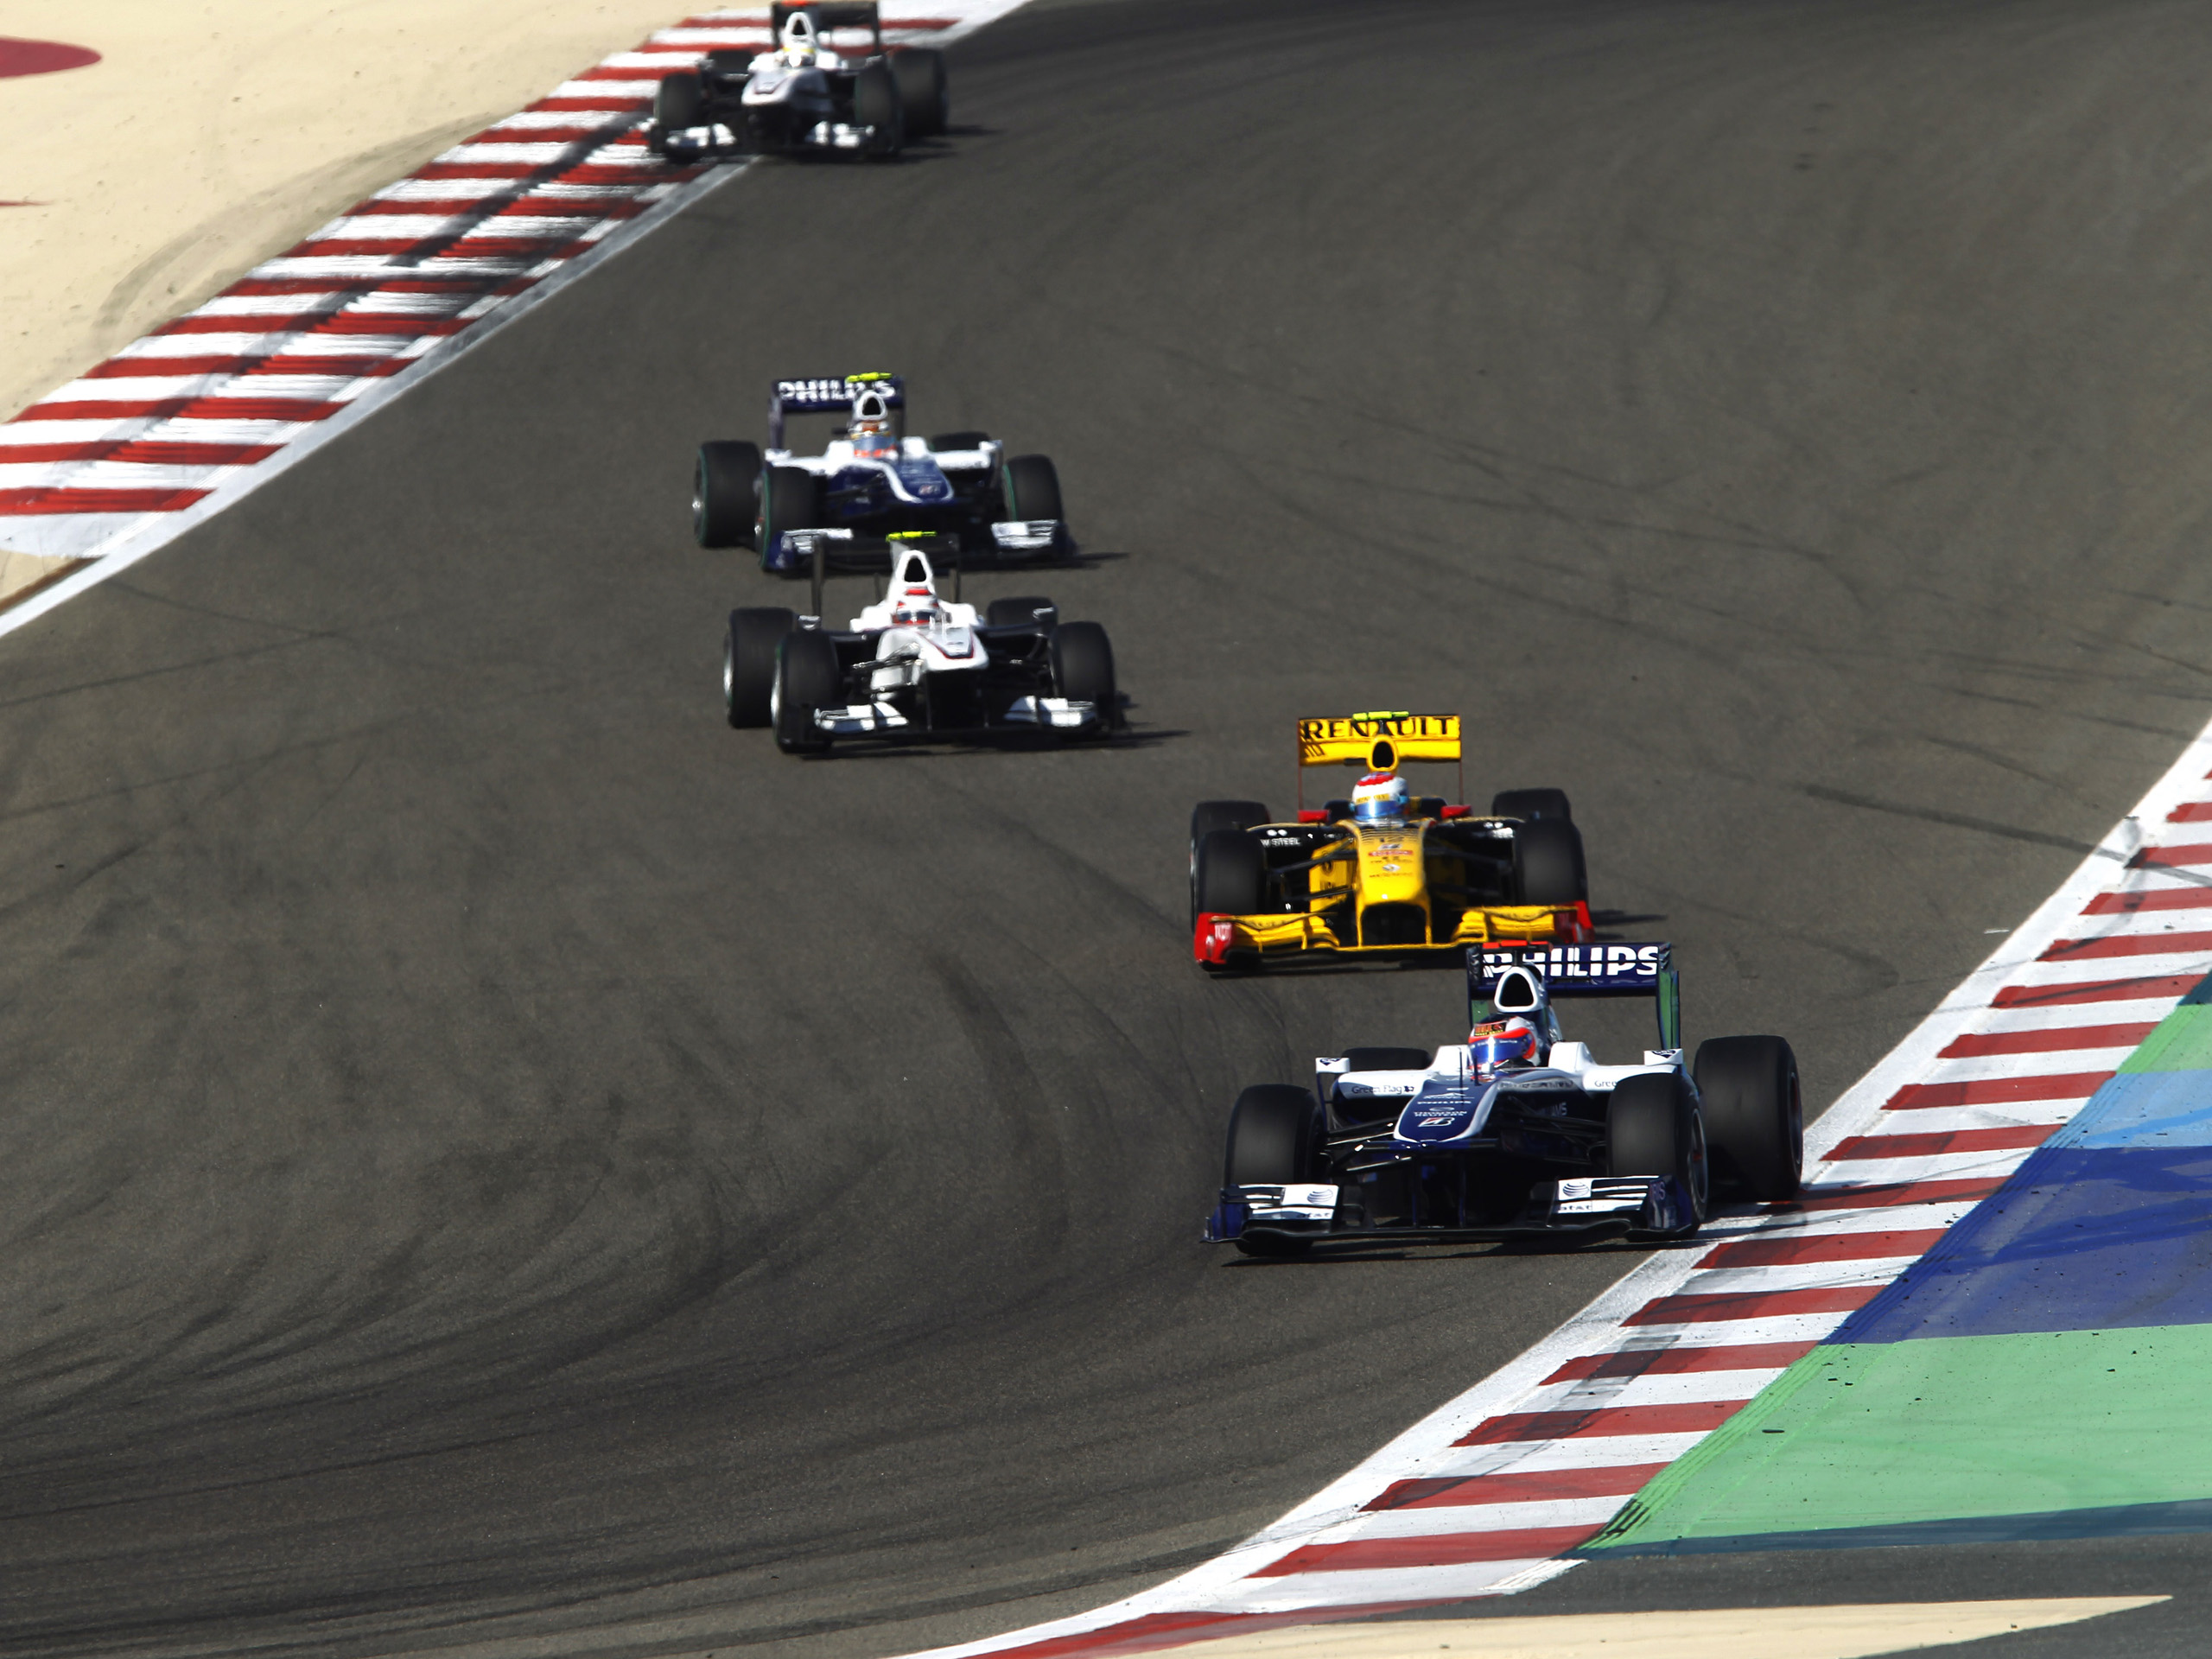 Bahrain GP under threat?